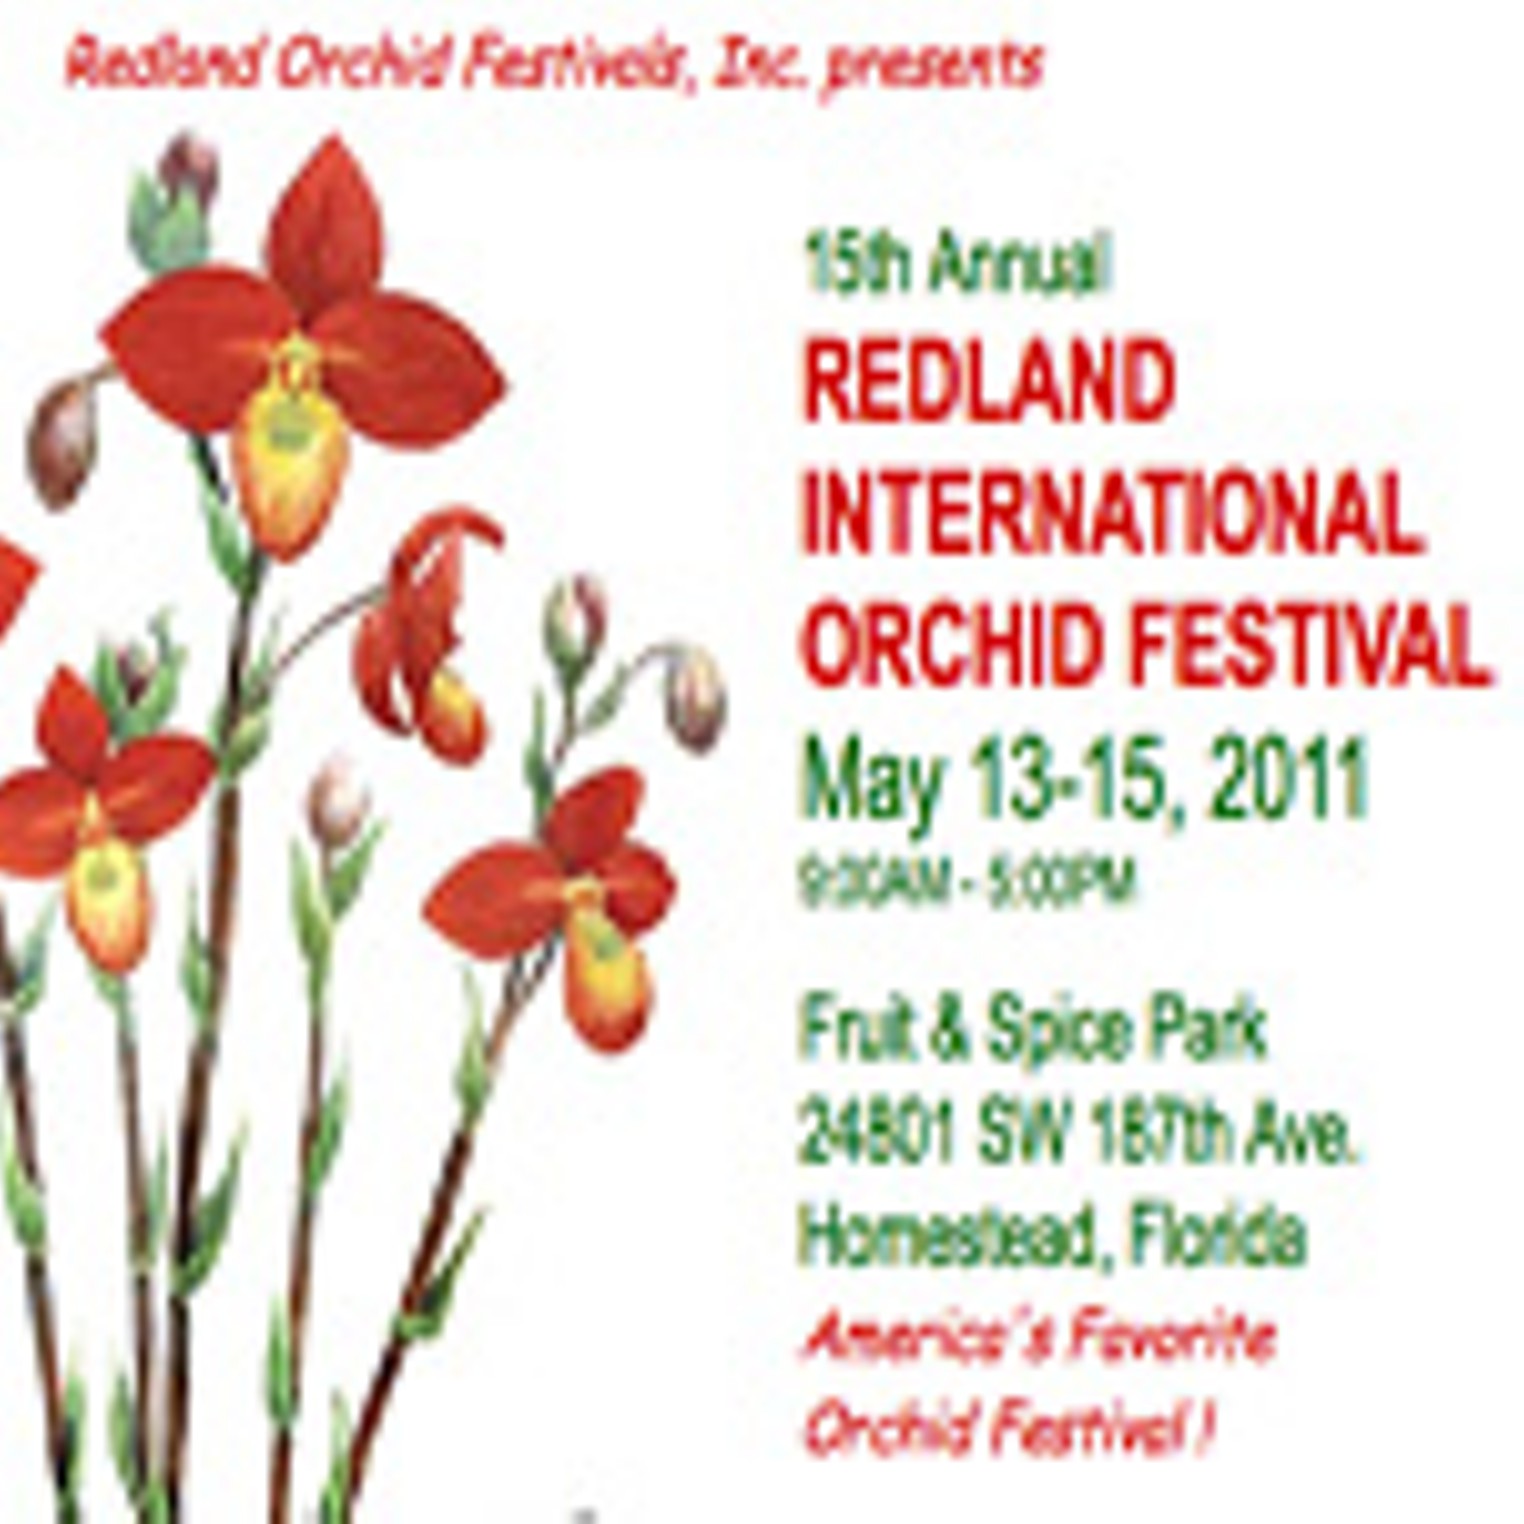 Redland Orchid Festival Miami Miami New Times The Leading